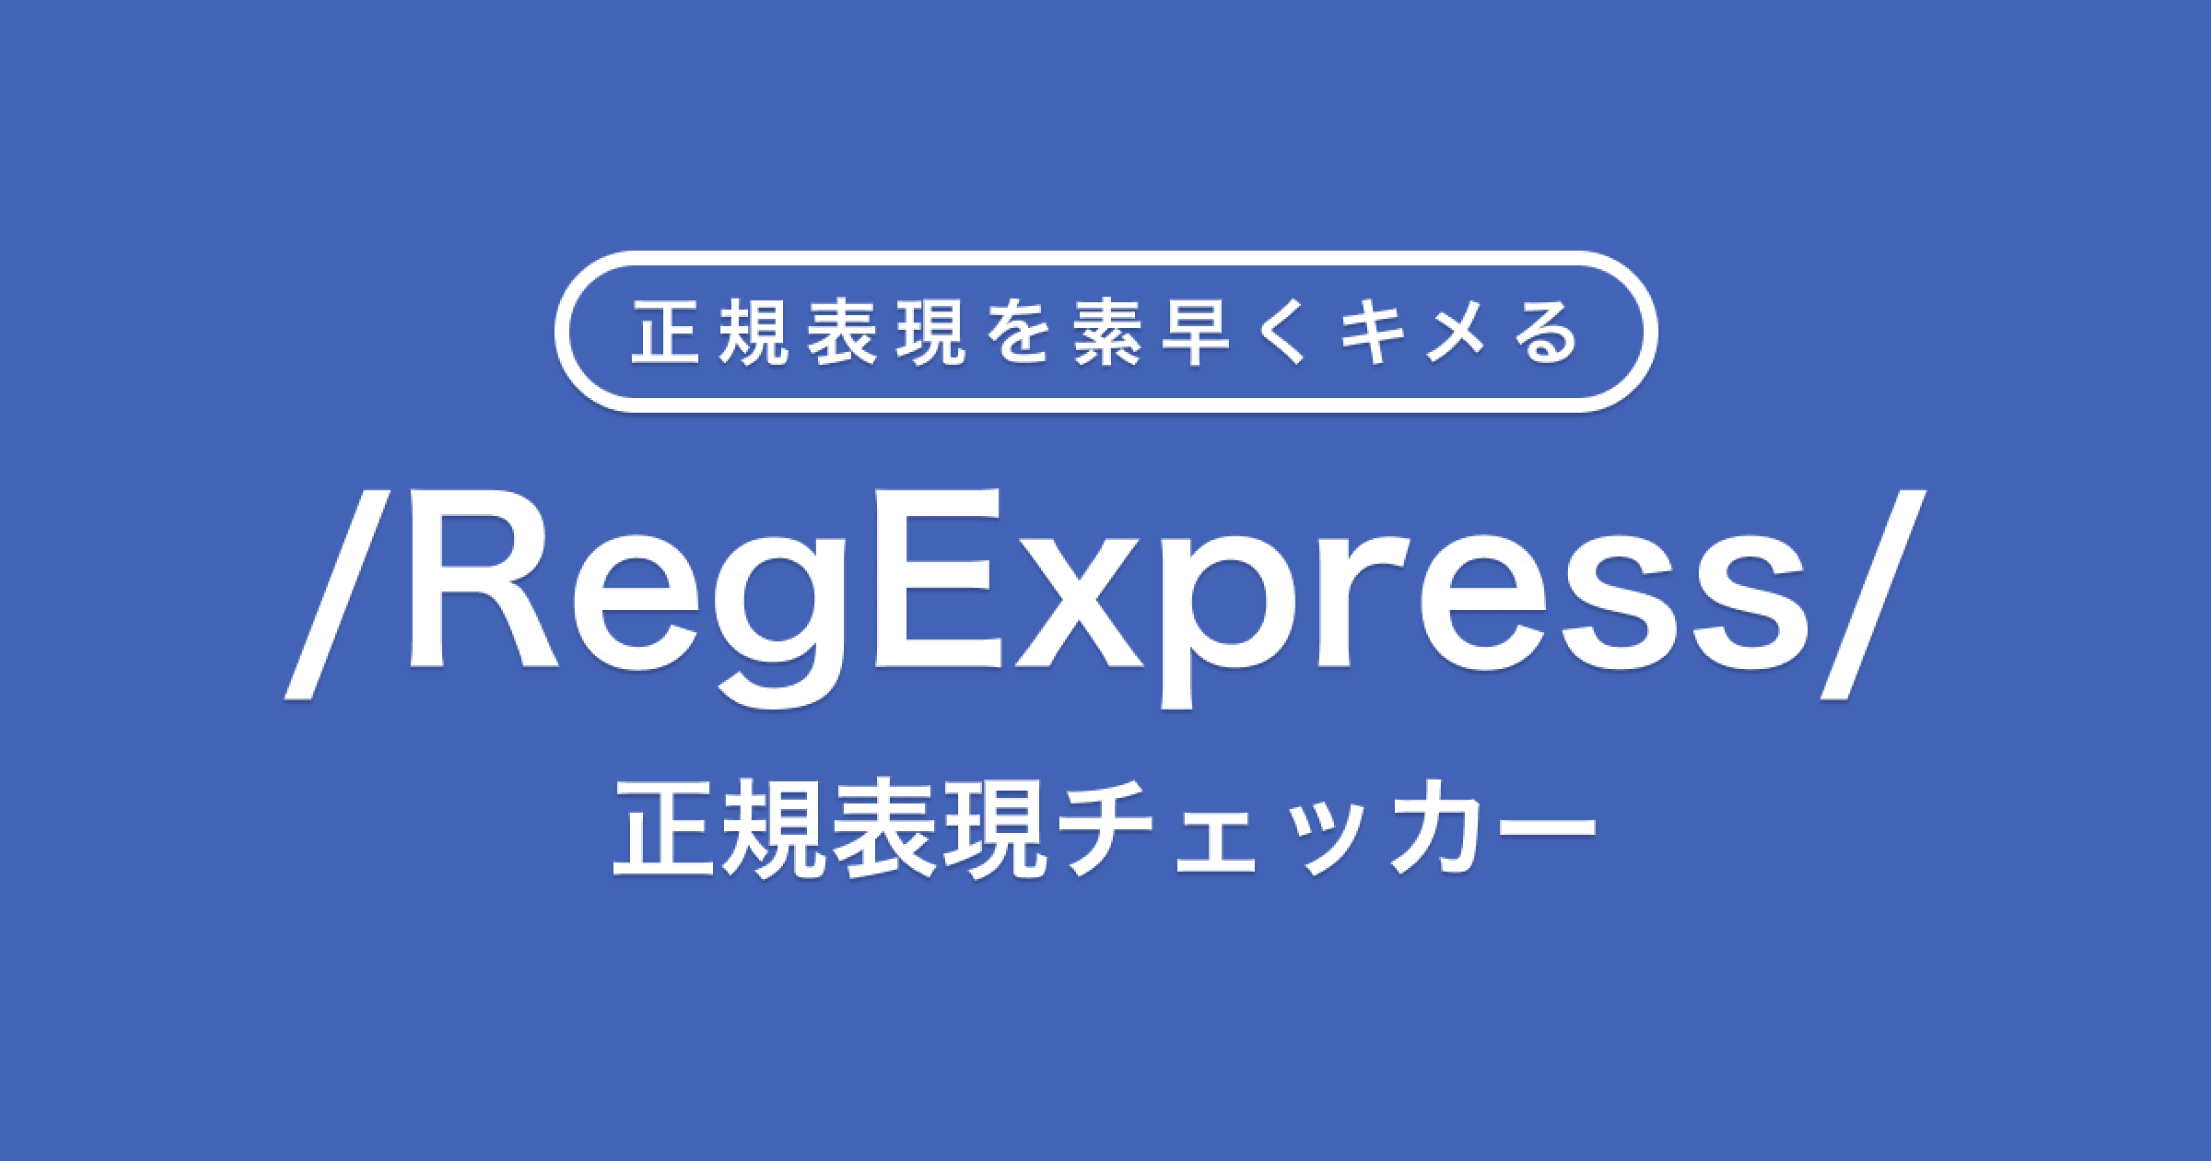 正規表現チェッカー RegExpressのバナー画像